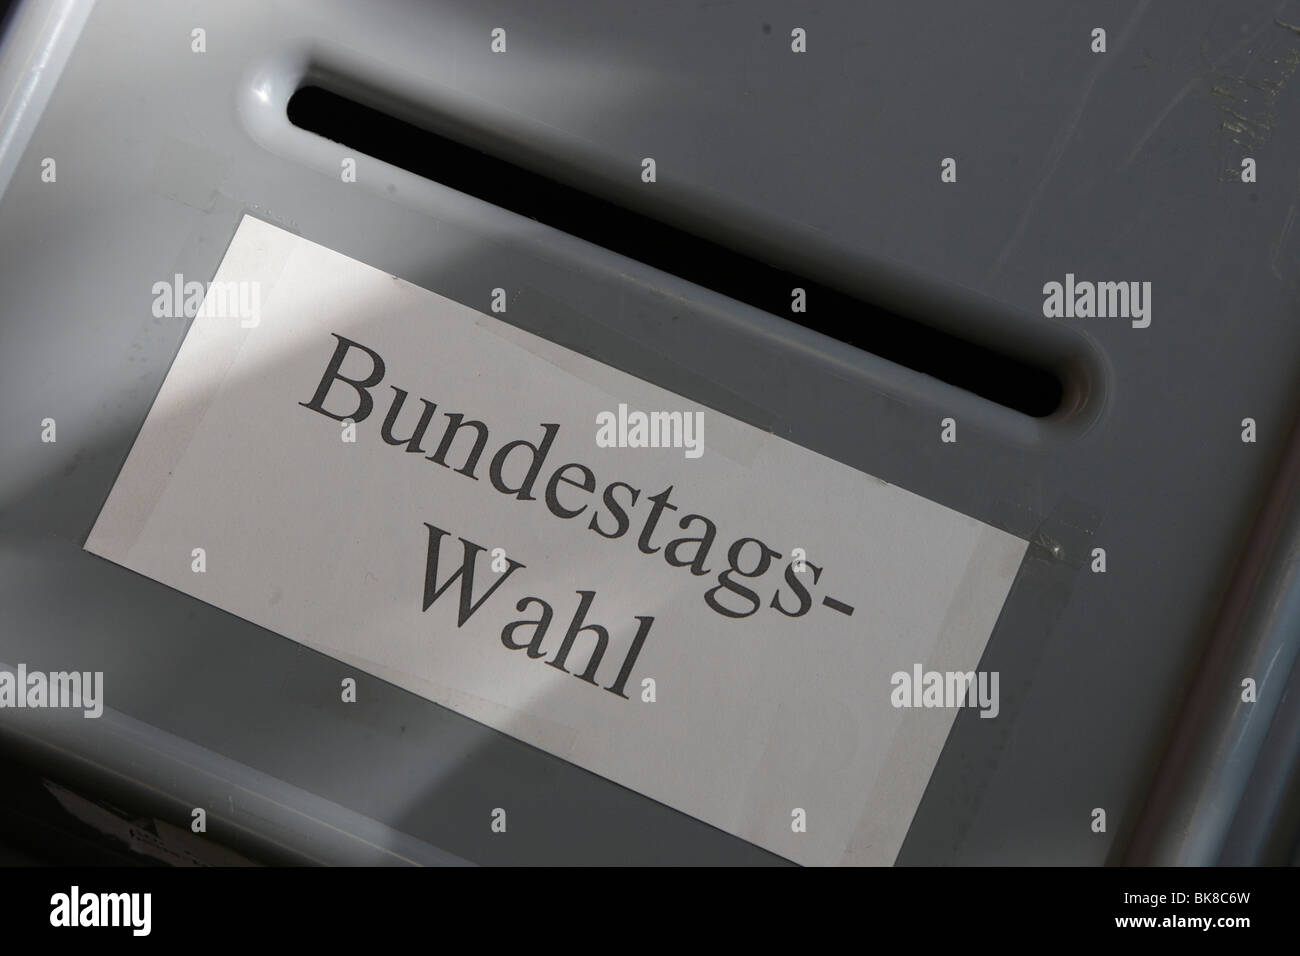 Bundestag elecciones, urnas Foto de stock